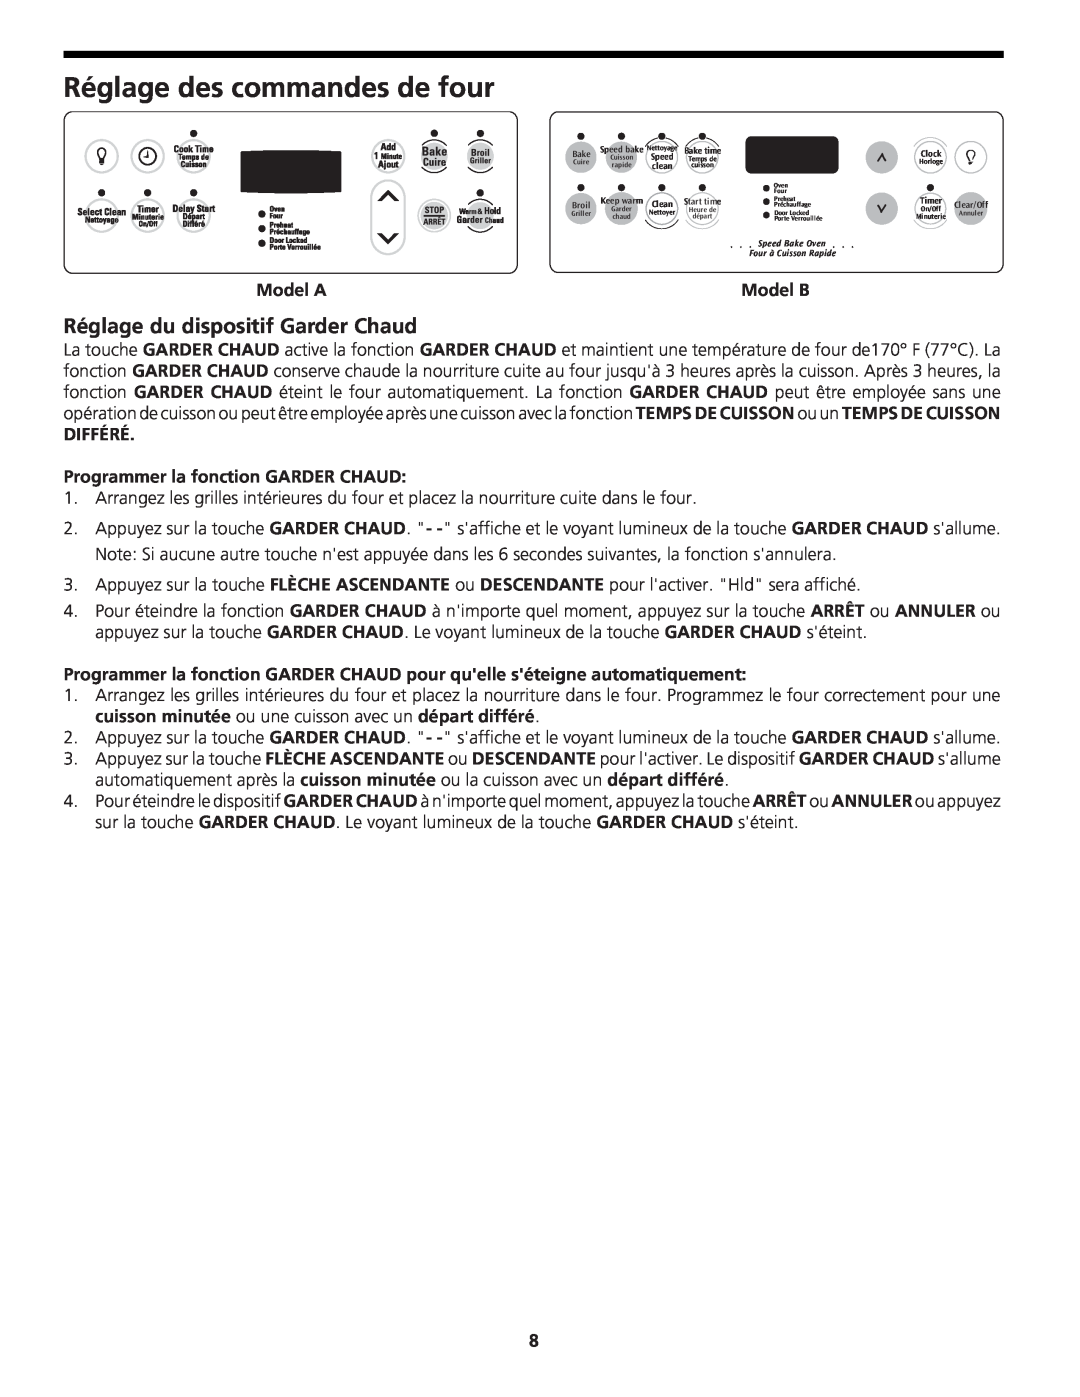 Frigidaire 318204142 (0802) manual Réglage du dispositif Garder Chaud, DIFFÉRÉ Programmer la fonction GARDER CHAUD, Model A 